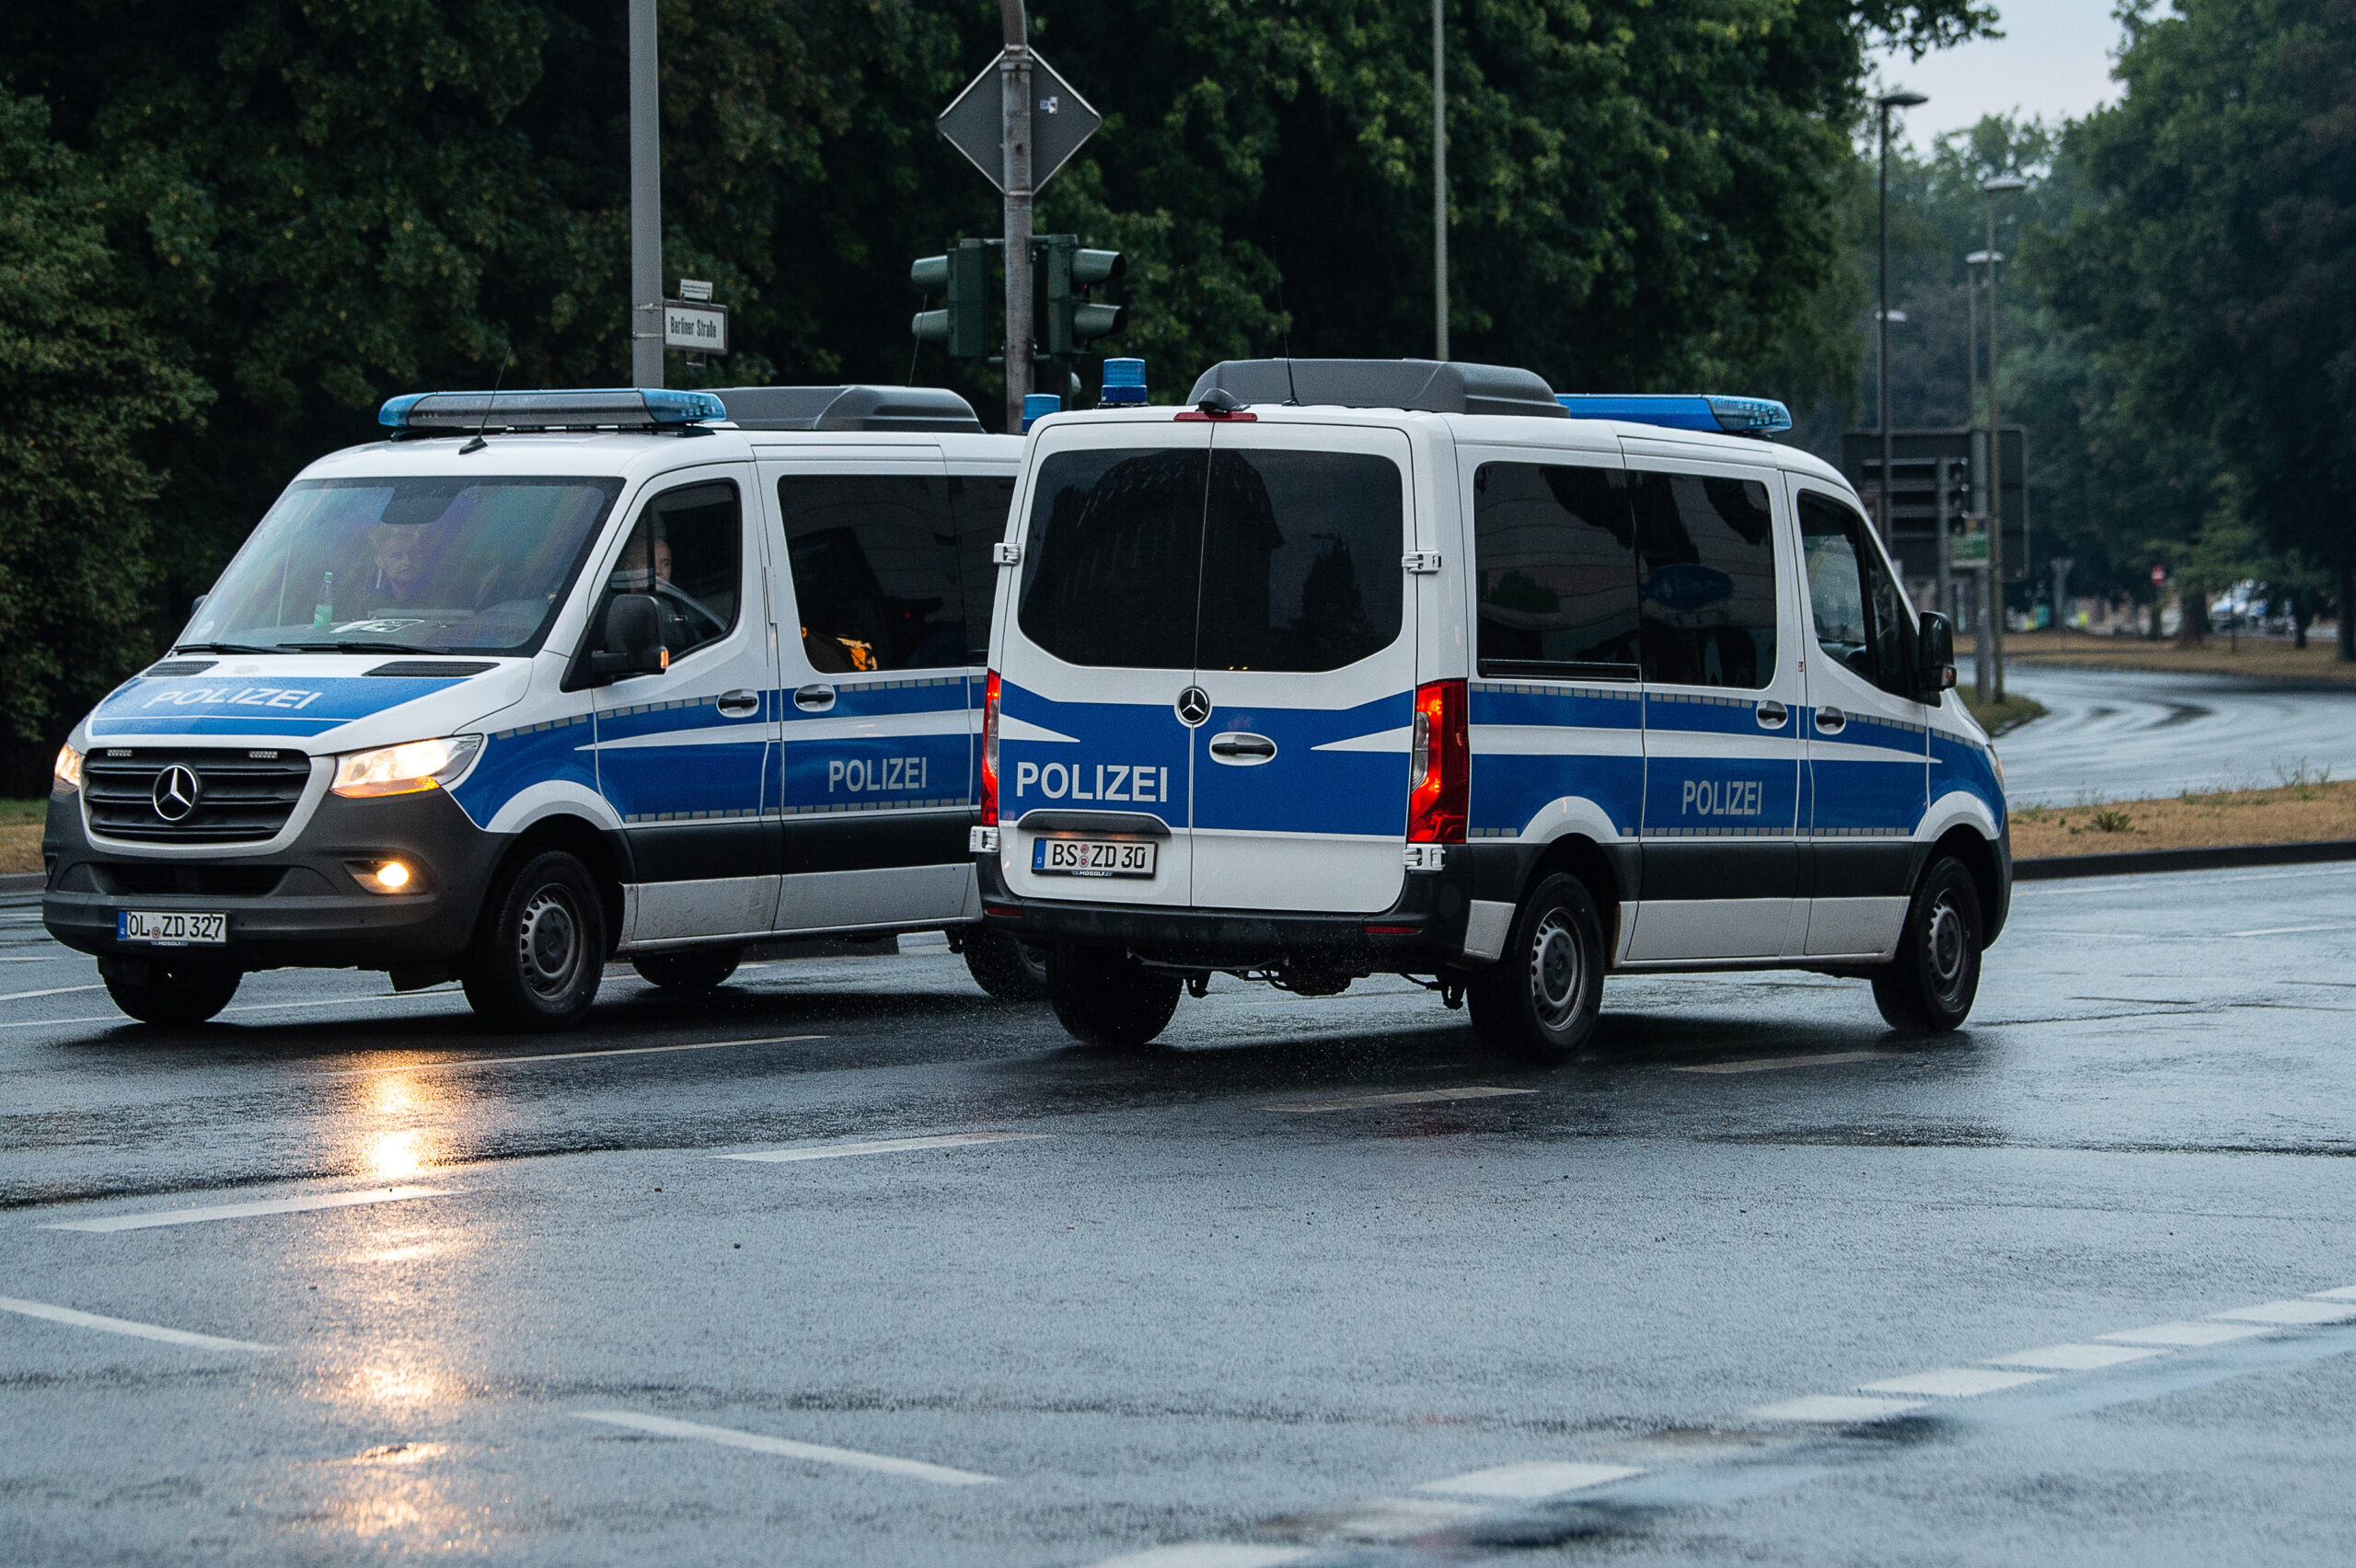 Fahrzeuge der Polizei in Niedersachsen im Einsatz (Symbolbild).